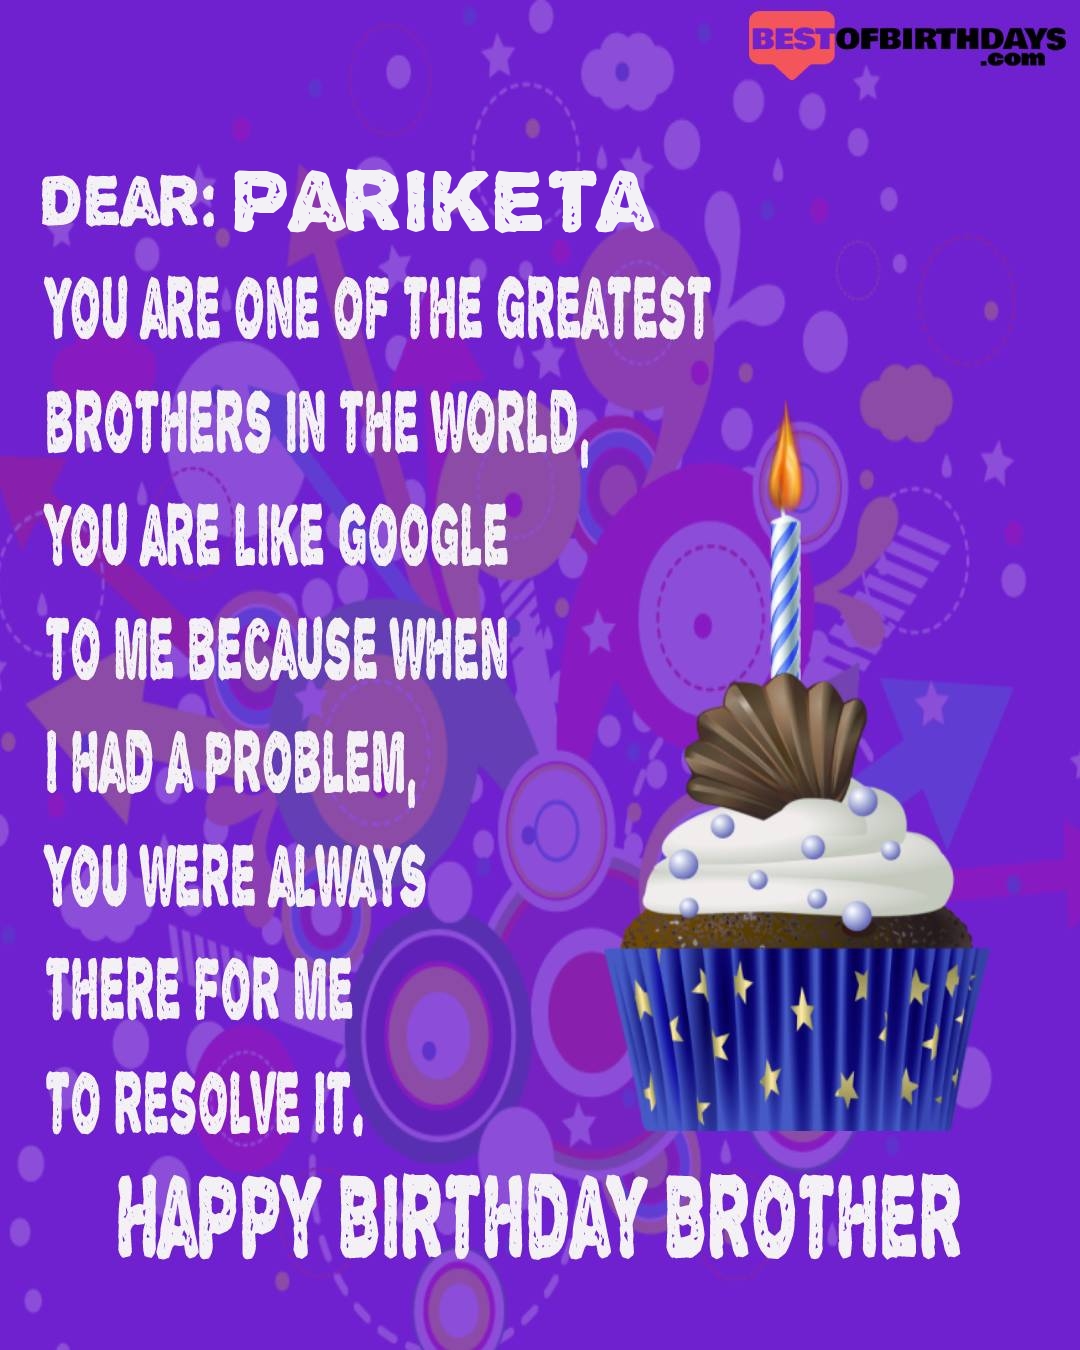 Happy birthday pariketa bhai brother bro